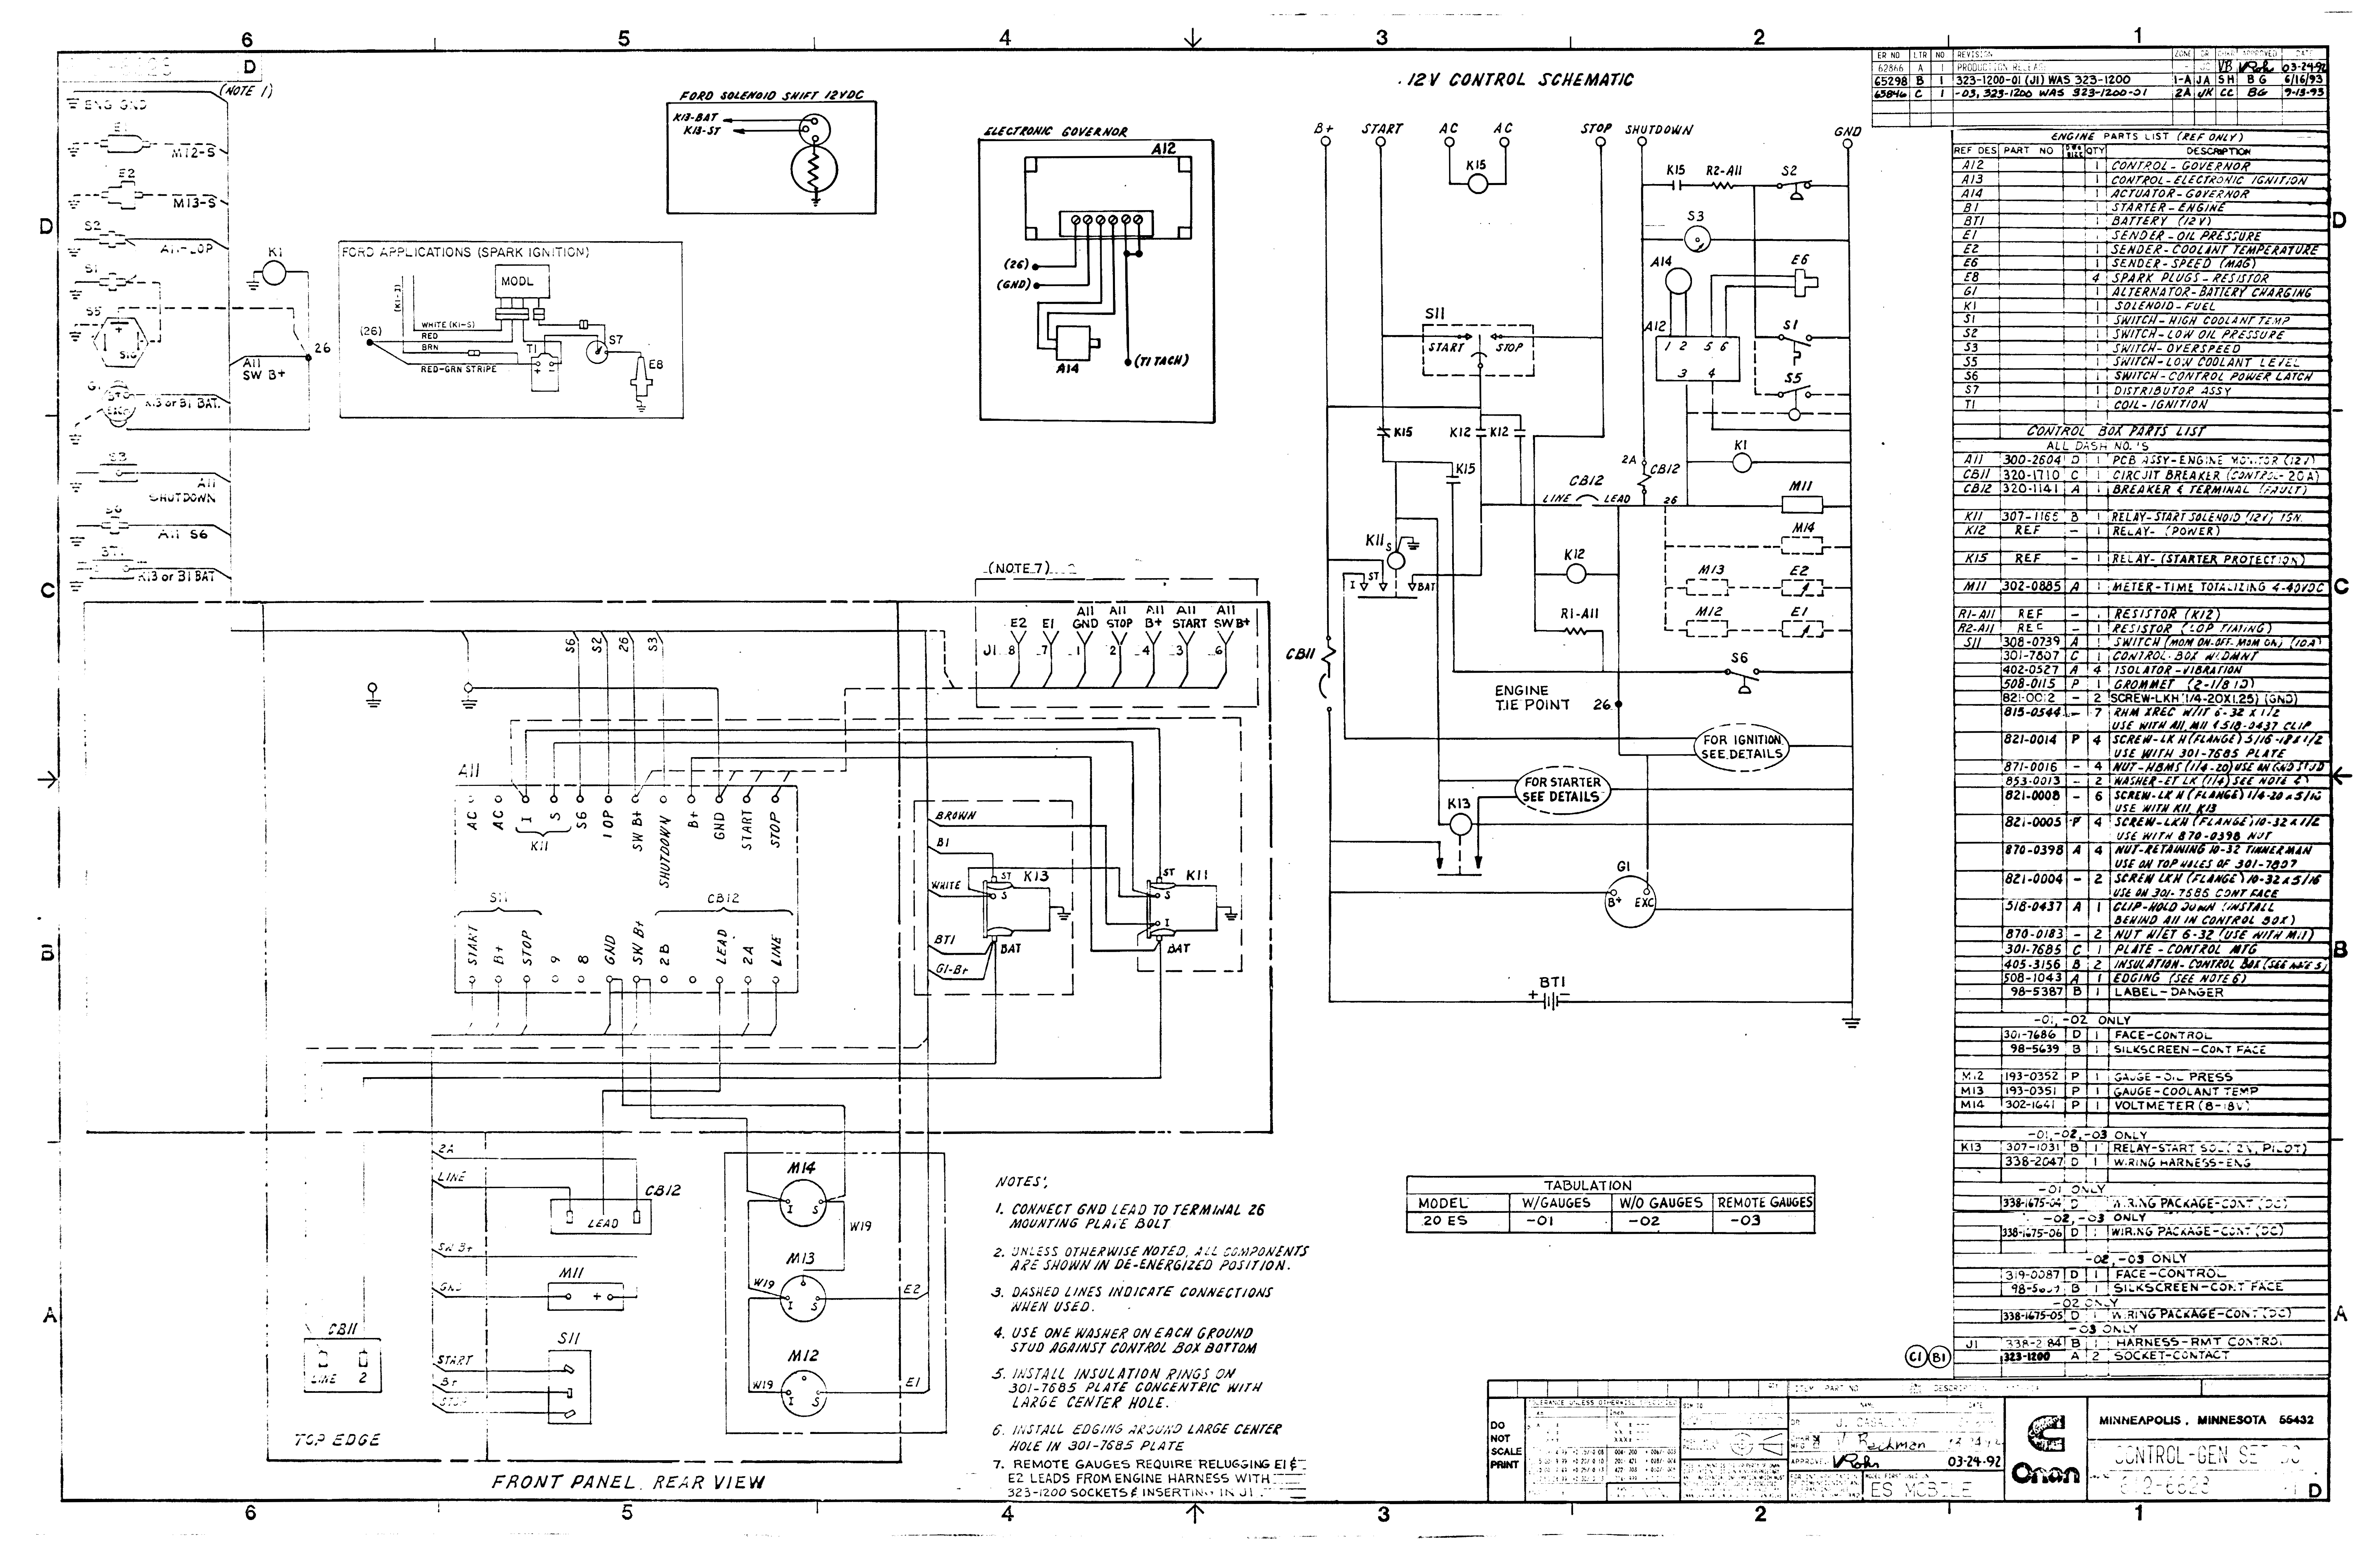 Onan Wiring Schematic - Data Wiring Diagram Schematic - Onan Generator Wiring Diagram